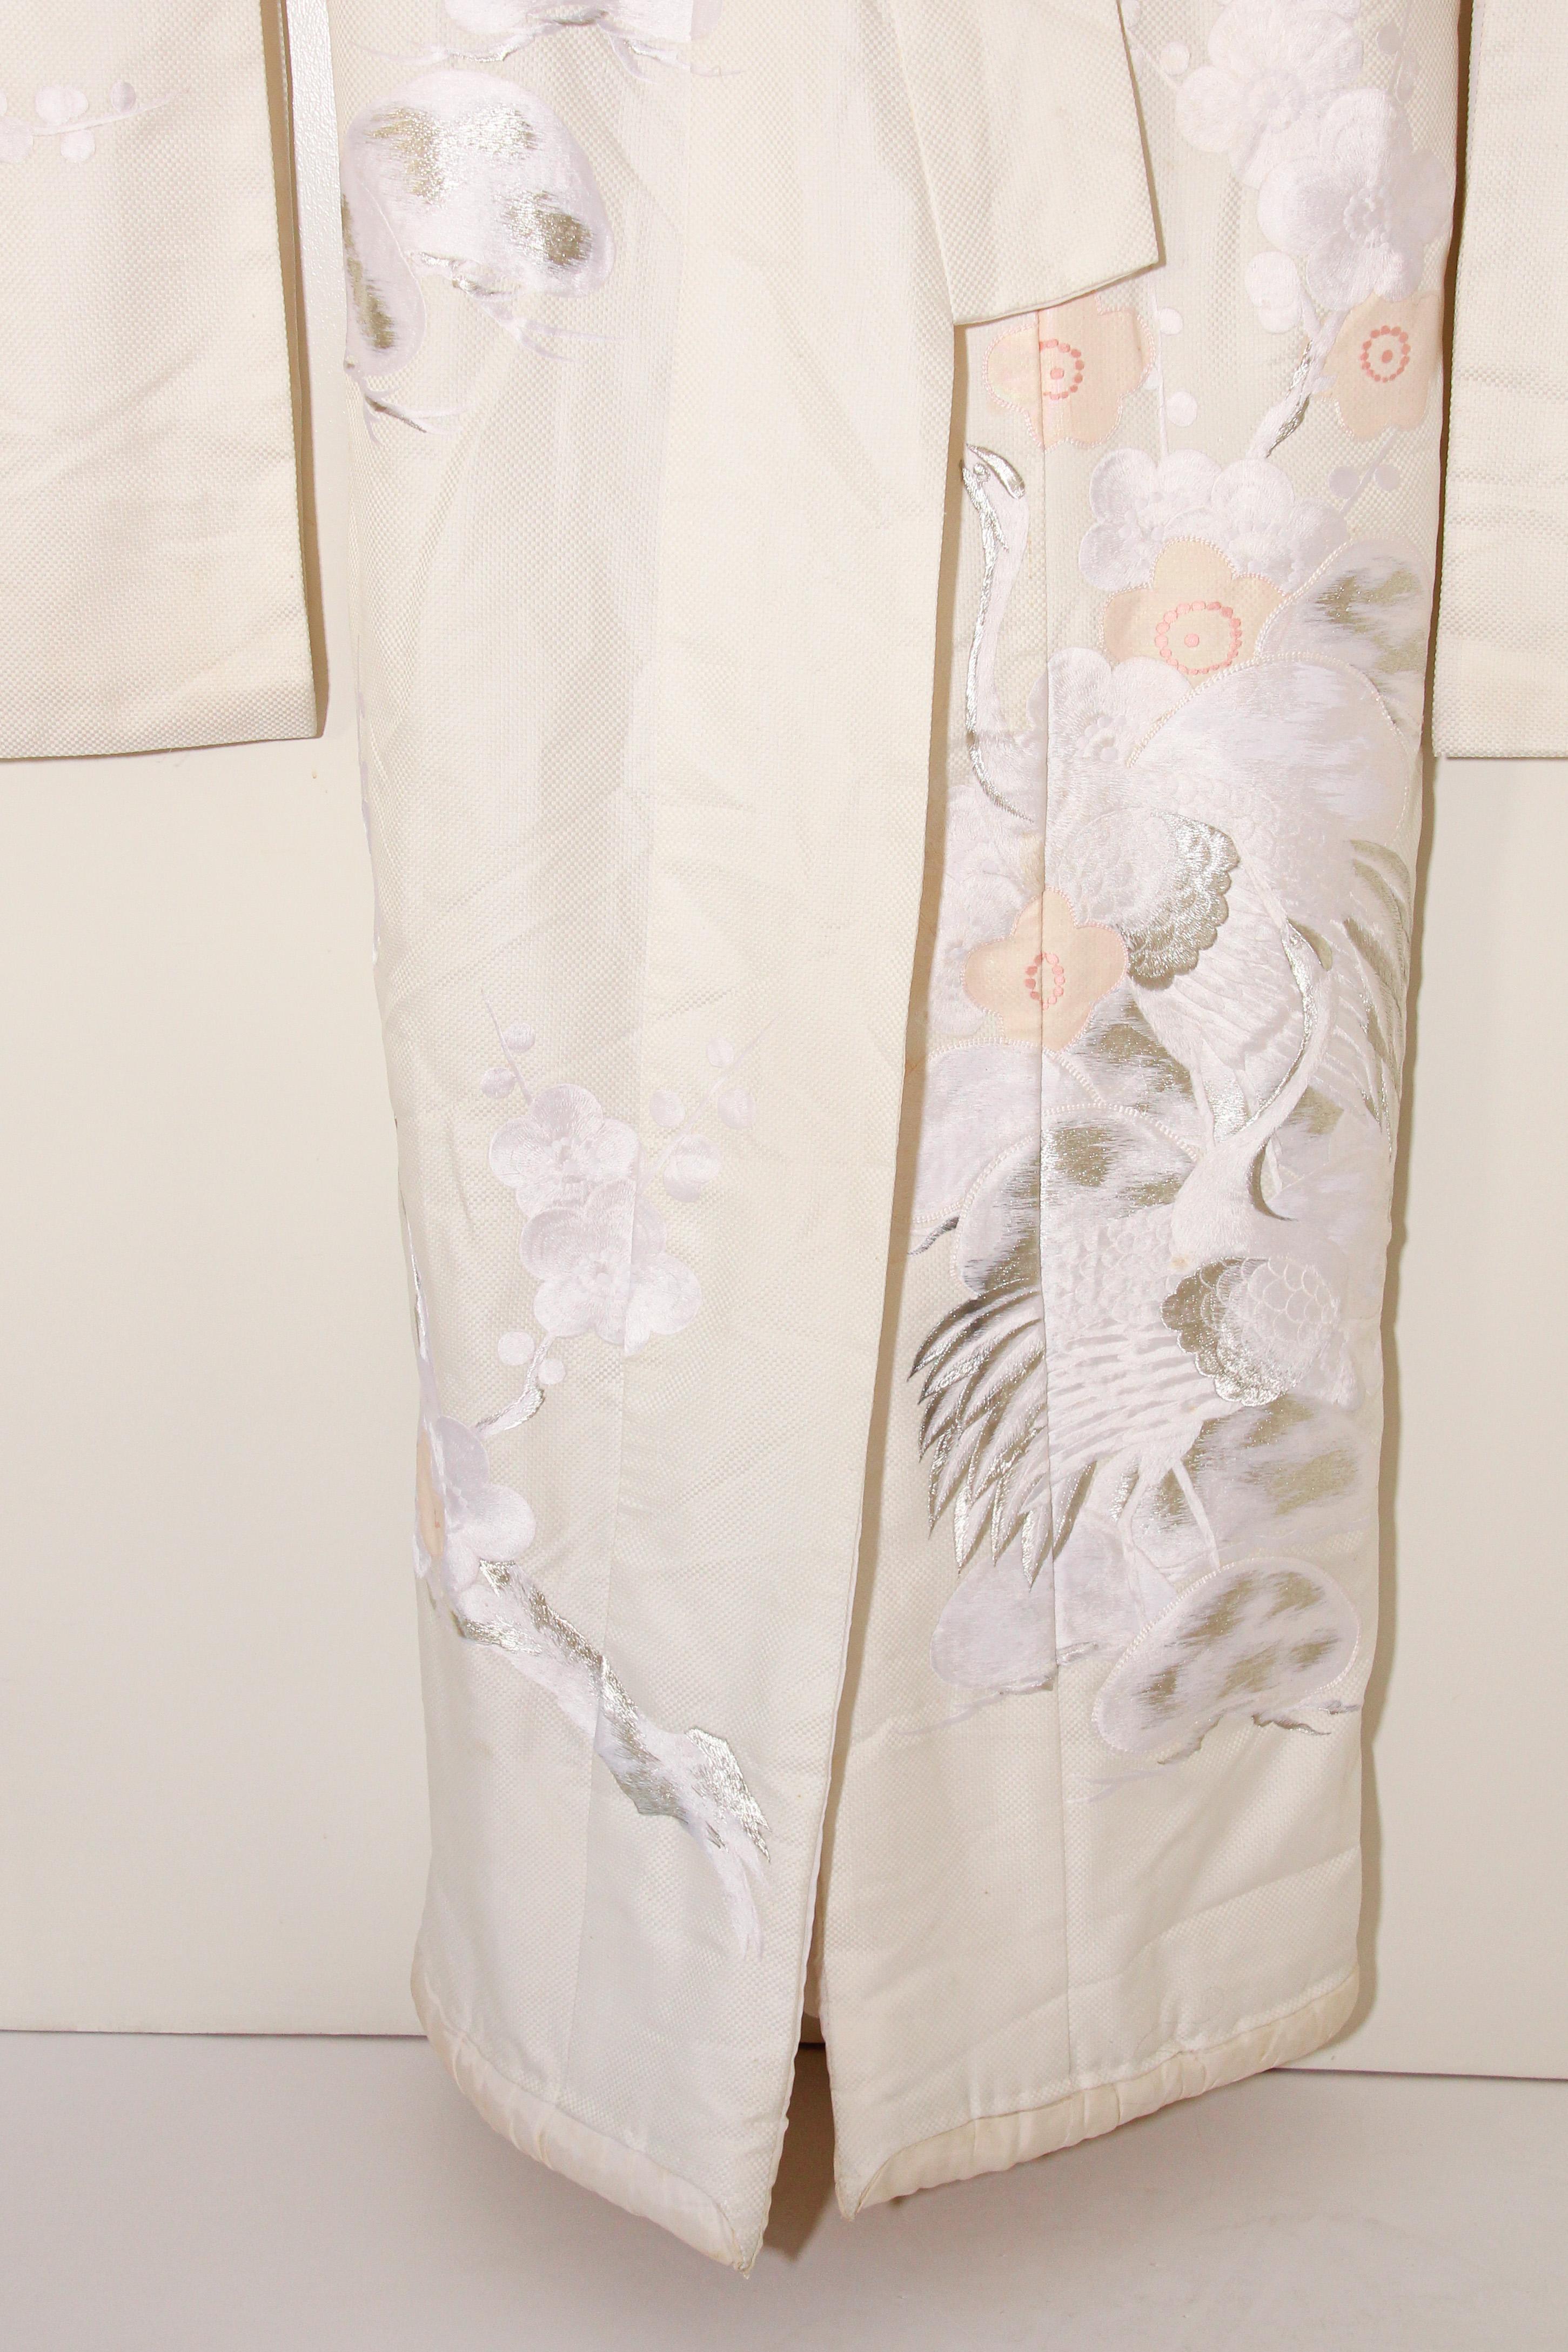 Vintage Collectable Japanese White Silk Ceremonial Wedding Kimono 6